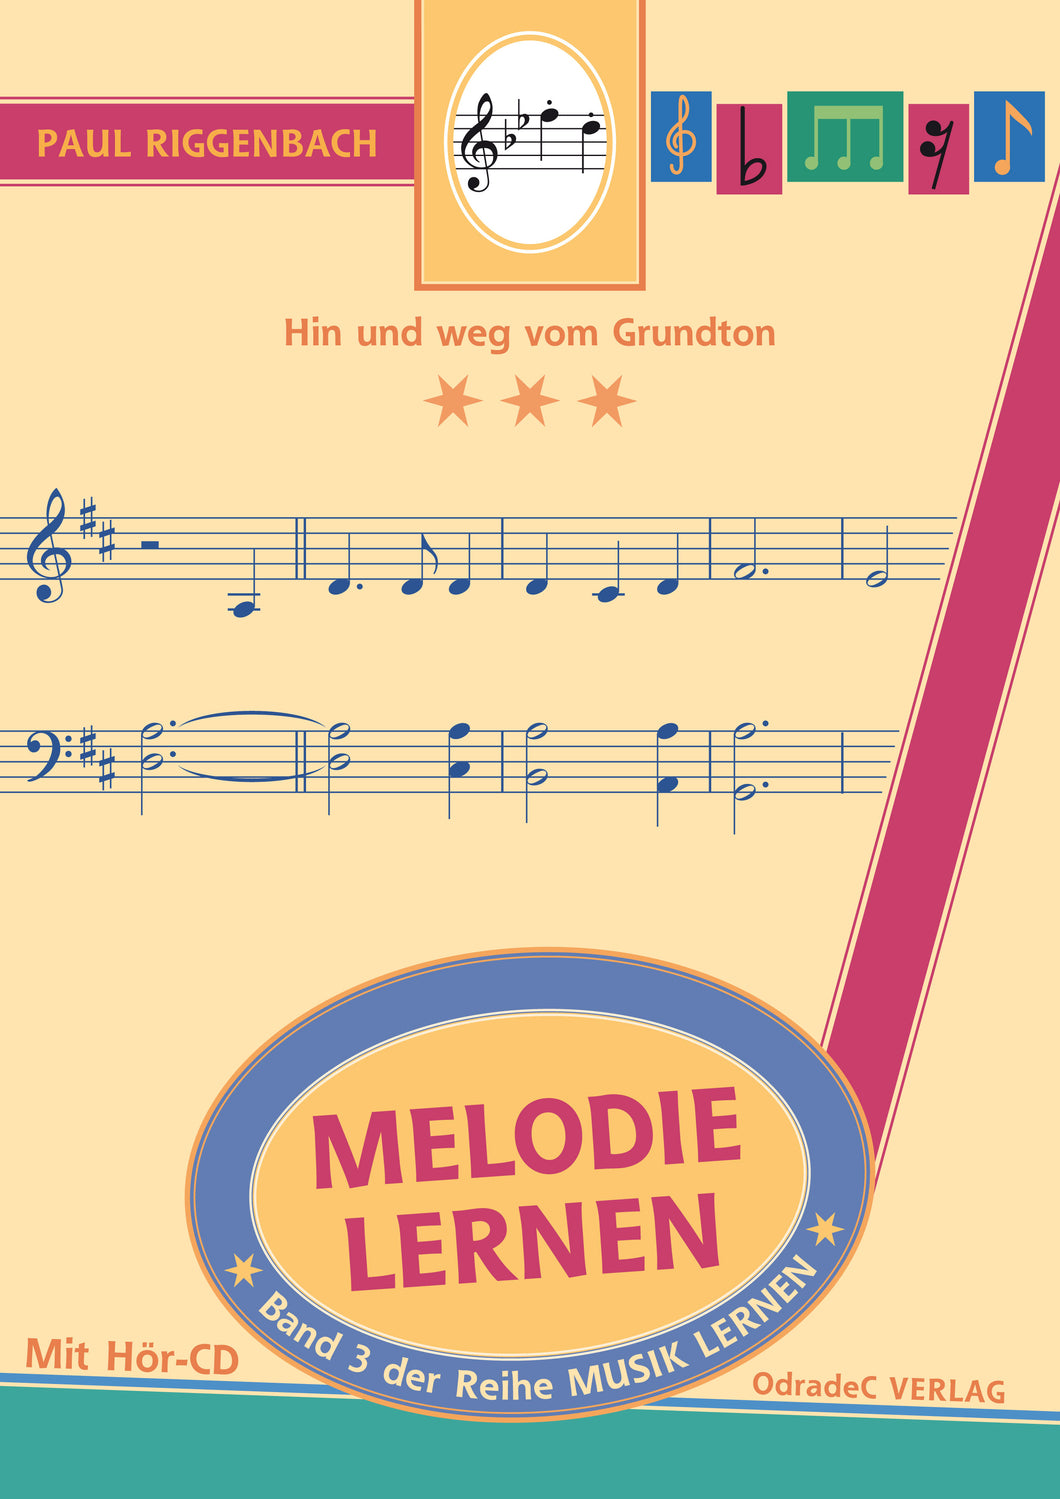 Riggenbach, Paul: Melodie lernen. Hin und weg vom Grundton. Mit Hör-CD (German Book)